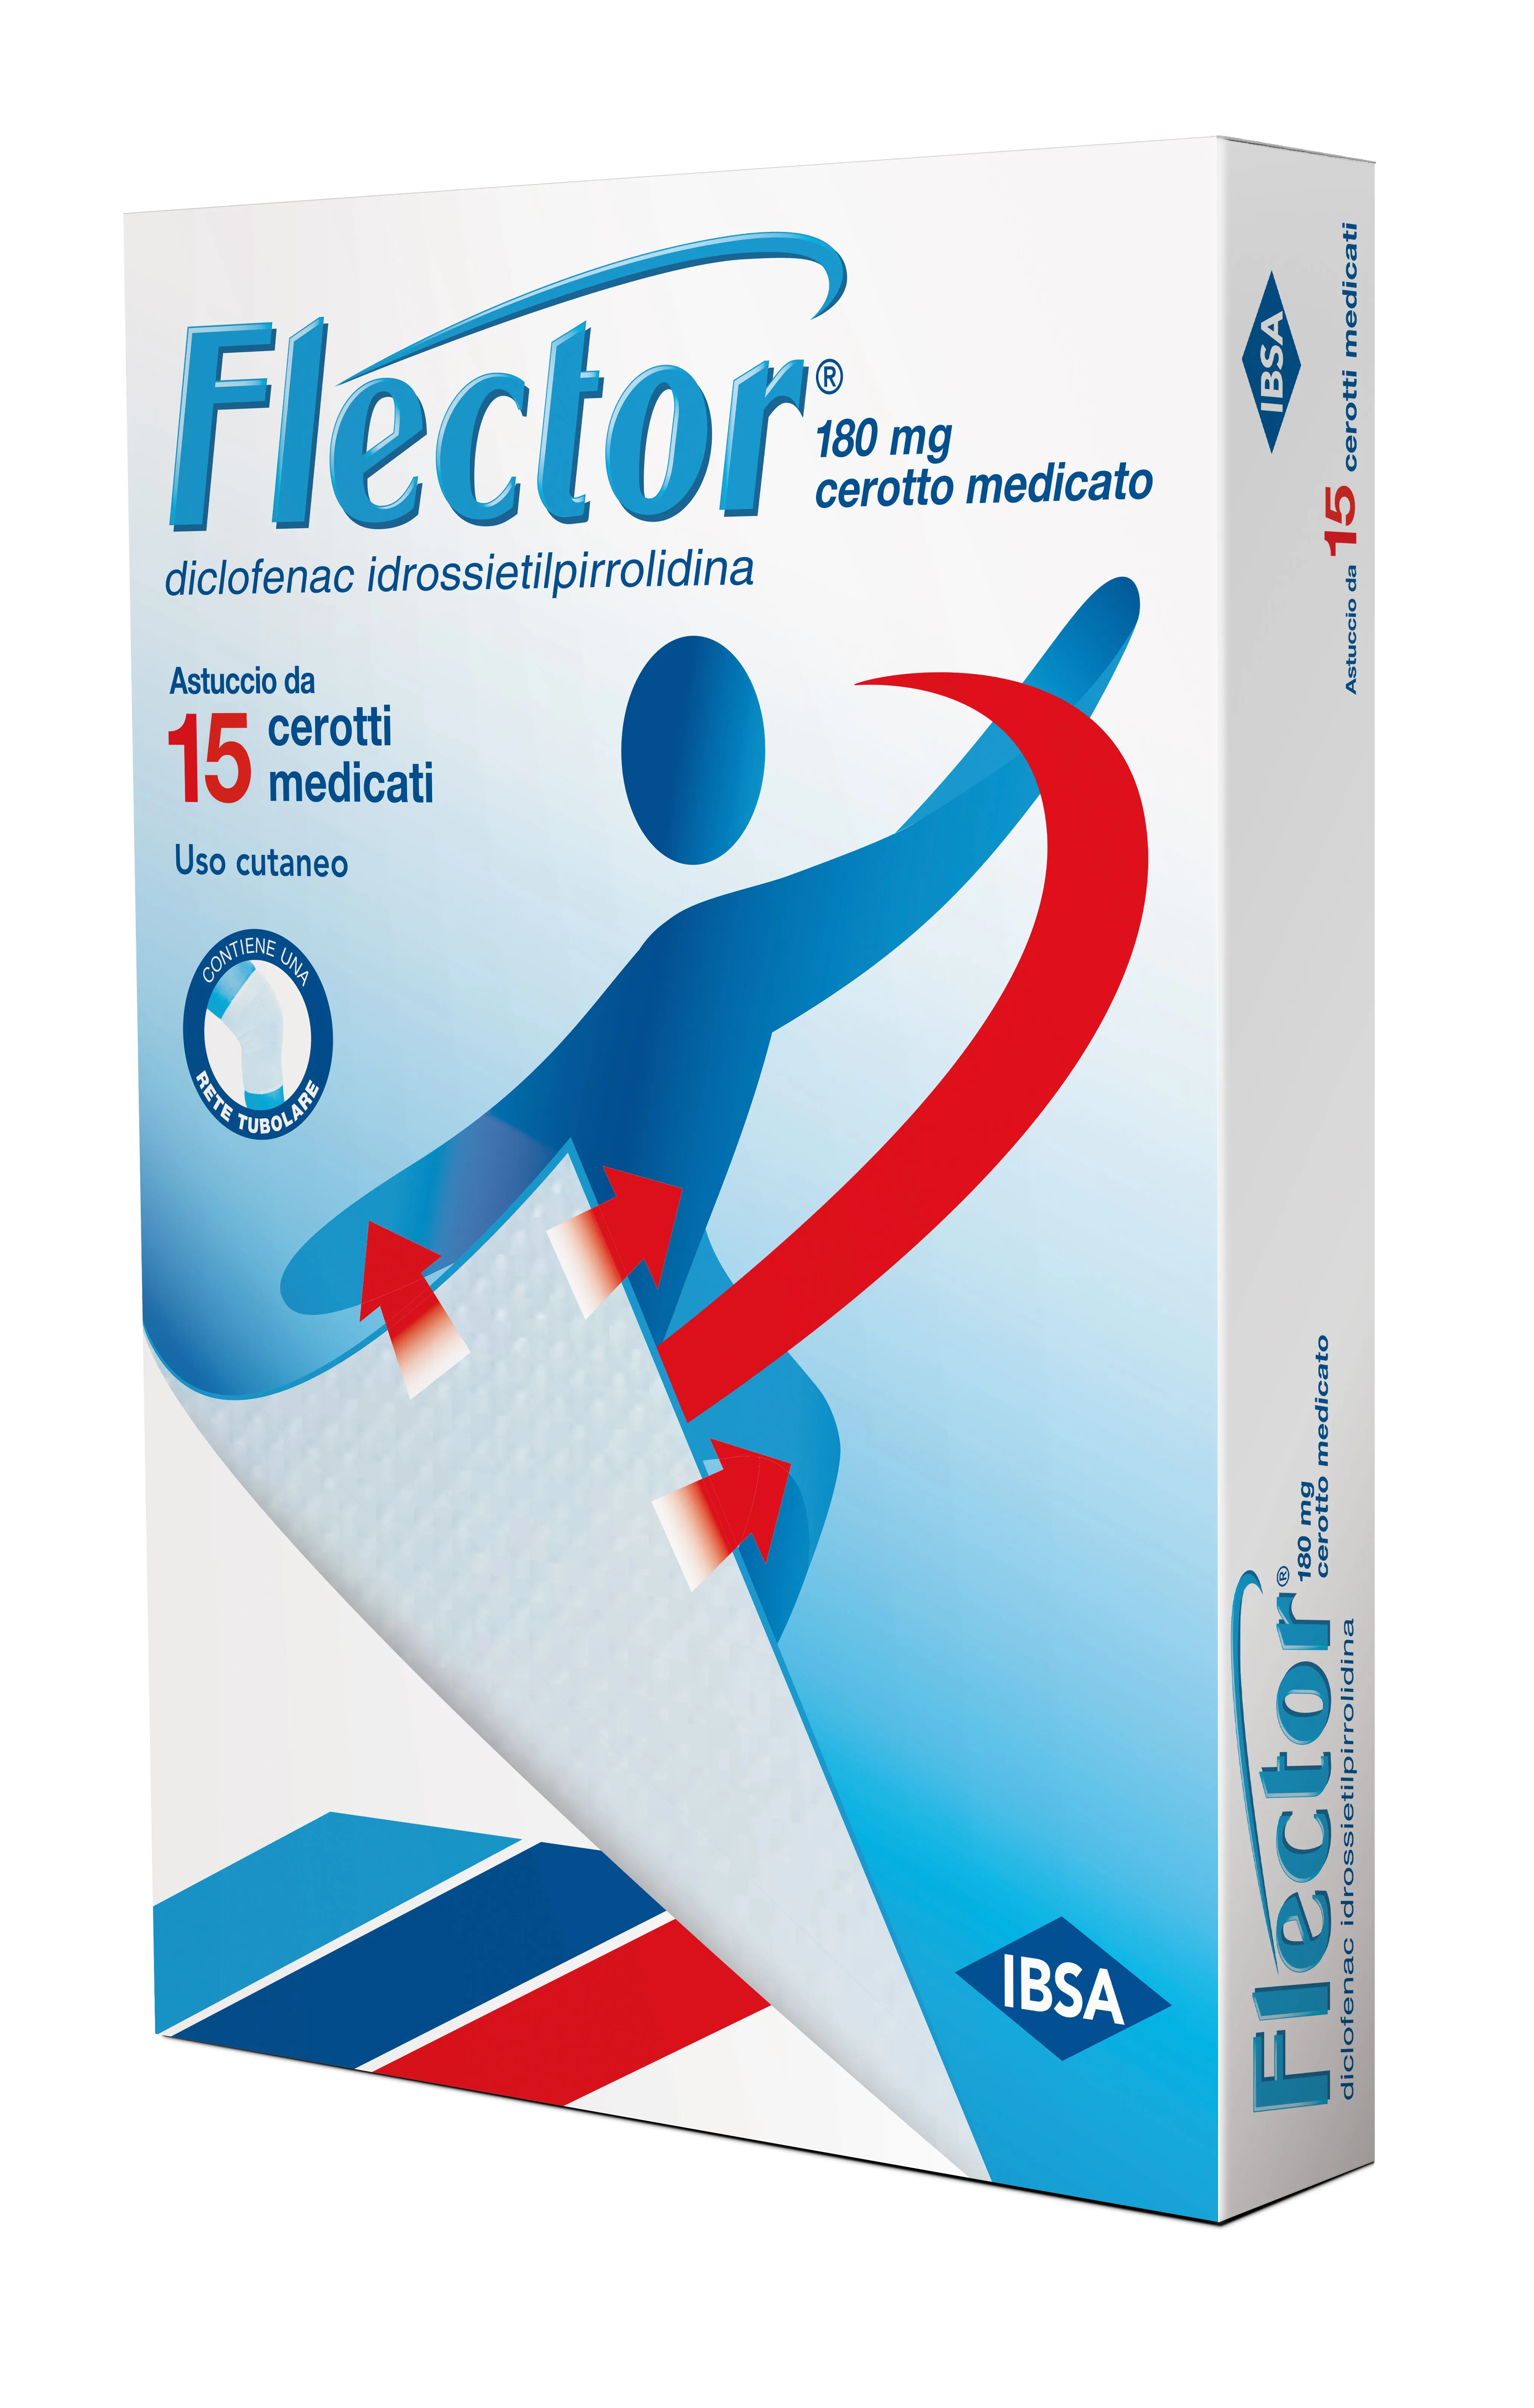 Flector 180 mg Diclofenac 15 Cerotti Medicati